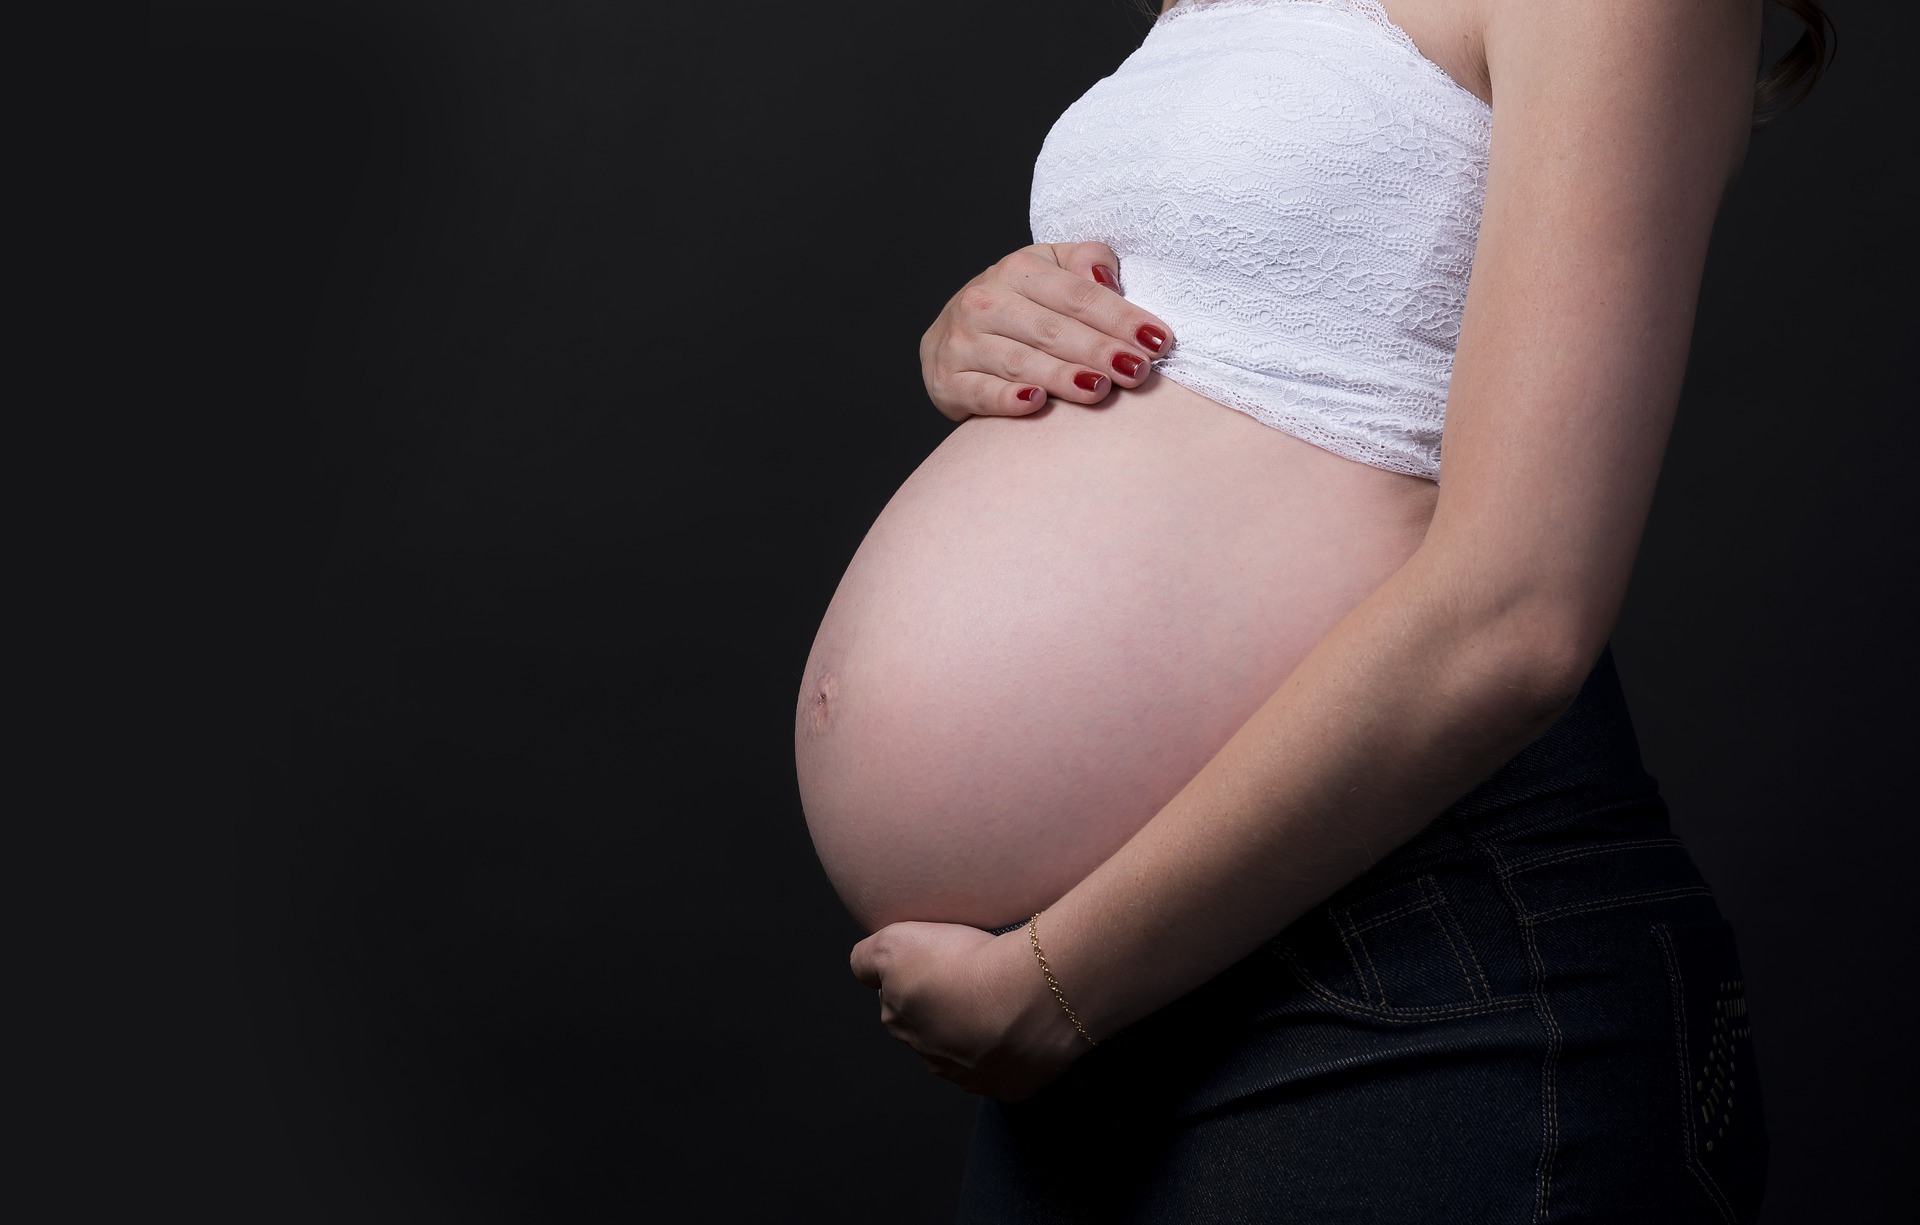 Tehotné ženy sú všeobecne náchylnejšie k respiračným nákazám, pretože tehotenstvo vedie nielen k oslabeniu imunity, ale aj niekoľko zmien v tele ženy. Medzi ne patrí zvýšenie bránice či zvýšená spotreba kyslíka, ktoré rozvoj infekcie dýchacích ciest uľahčujú. Ako ale popisuje niekoľko existujúcich štúdií z Číny, nebol doposiaľ závažnejší priebeh ochorenia u tehotných sledovaný.

Treba brať do úvahy, že sledovaný počet tehotných žien je zatiaľ veľmi malý a tiež doba vedeckého skúmania nákazy je zatiaľ naozaj krátka na poskytnutie dostatočne vypovedajúcich odborných informácií. Preto by tehotné ženy nemali brať situáciu na ľahkú váhu a mali by dôkladne dodržiavať všetky opatrenia, aby sa nenakazili.